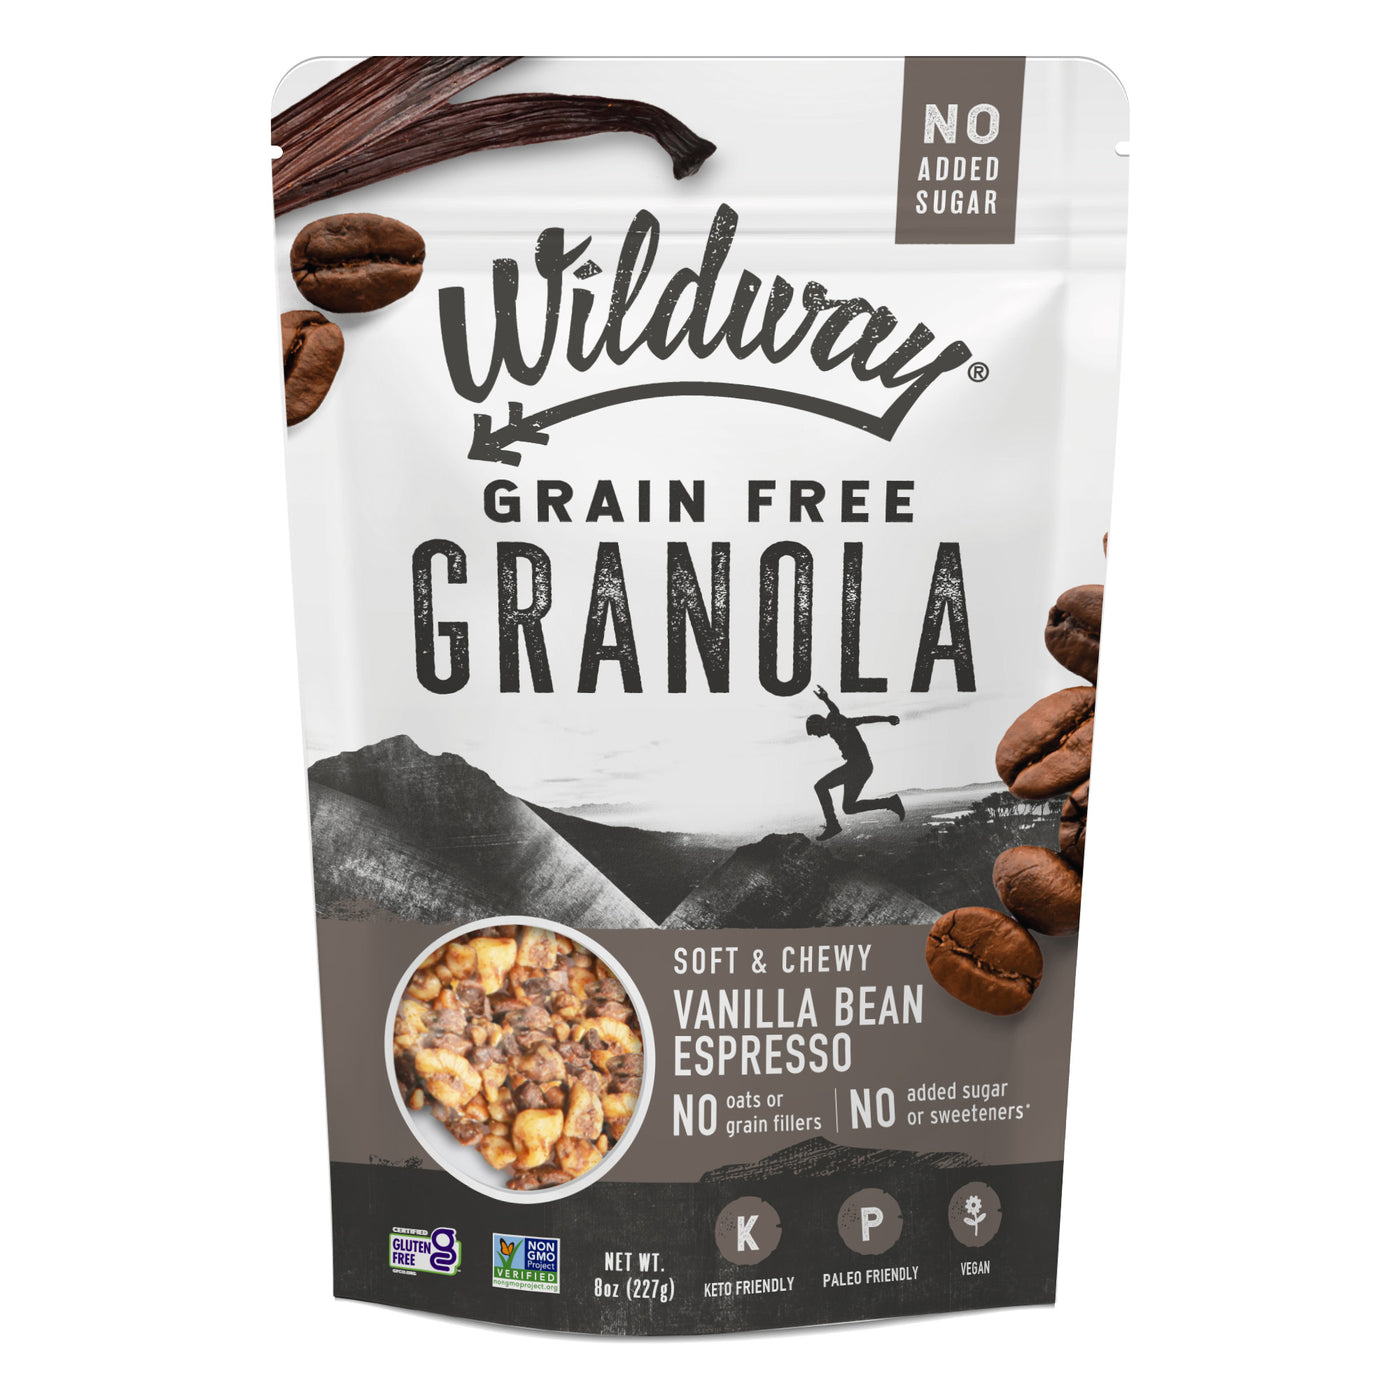 Grain-free Granola: Vanilla Bean Espresso, 8oz